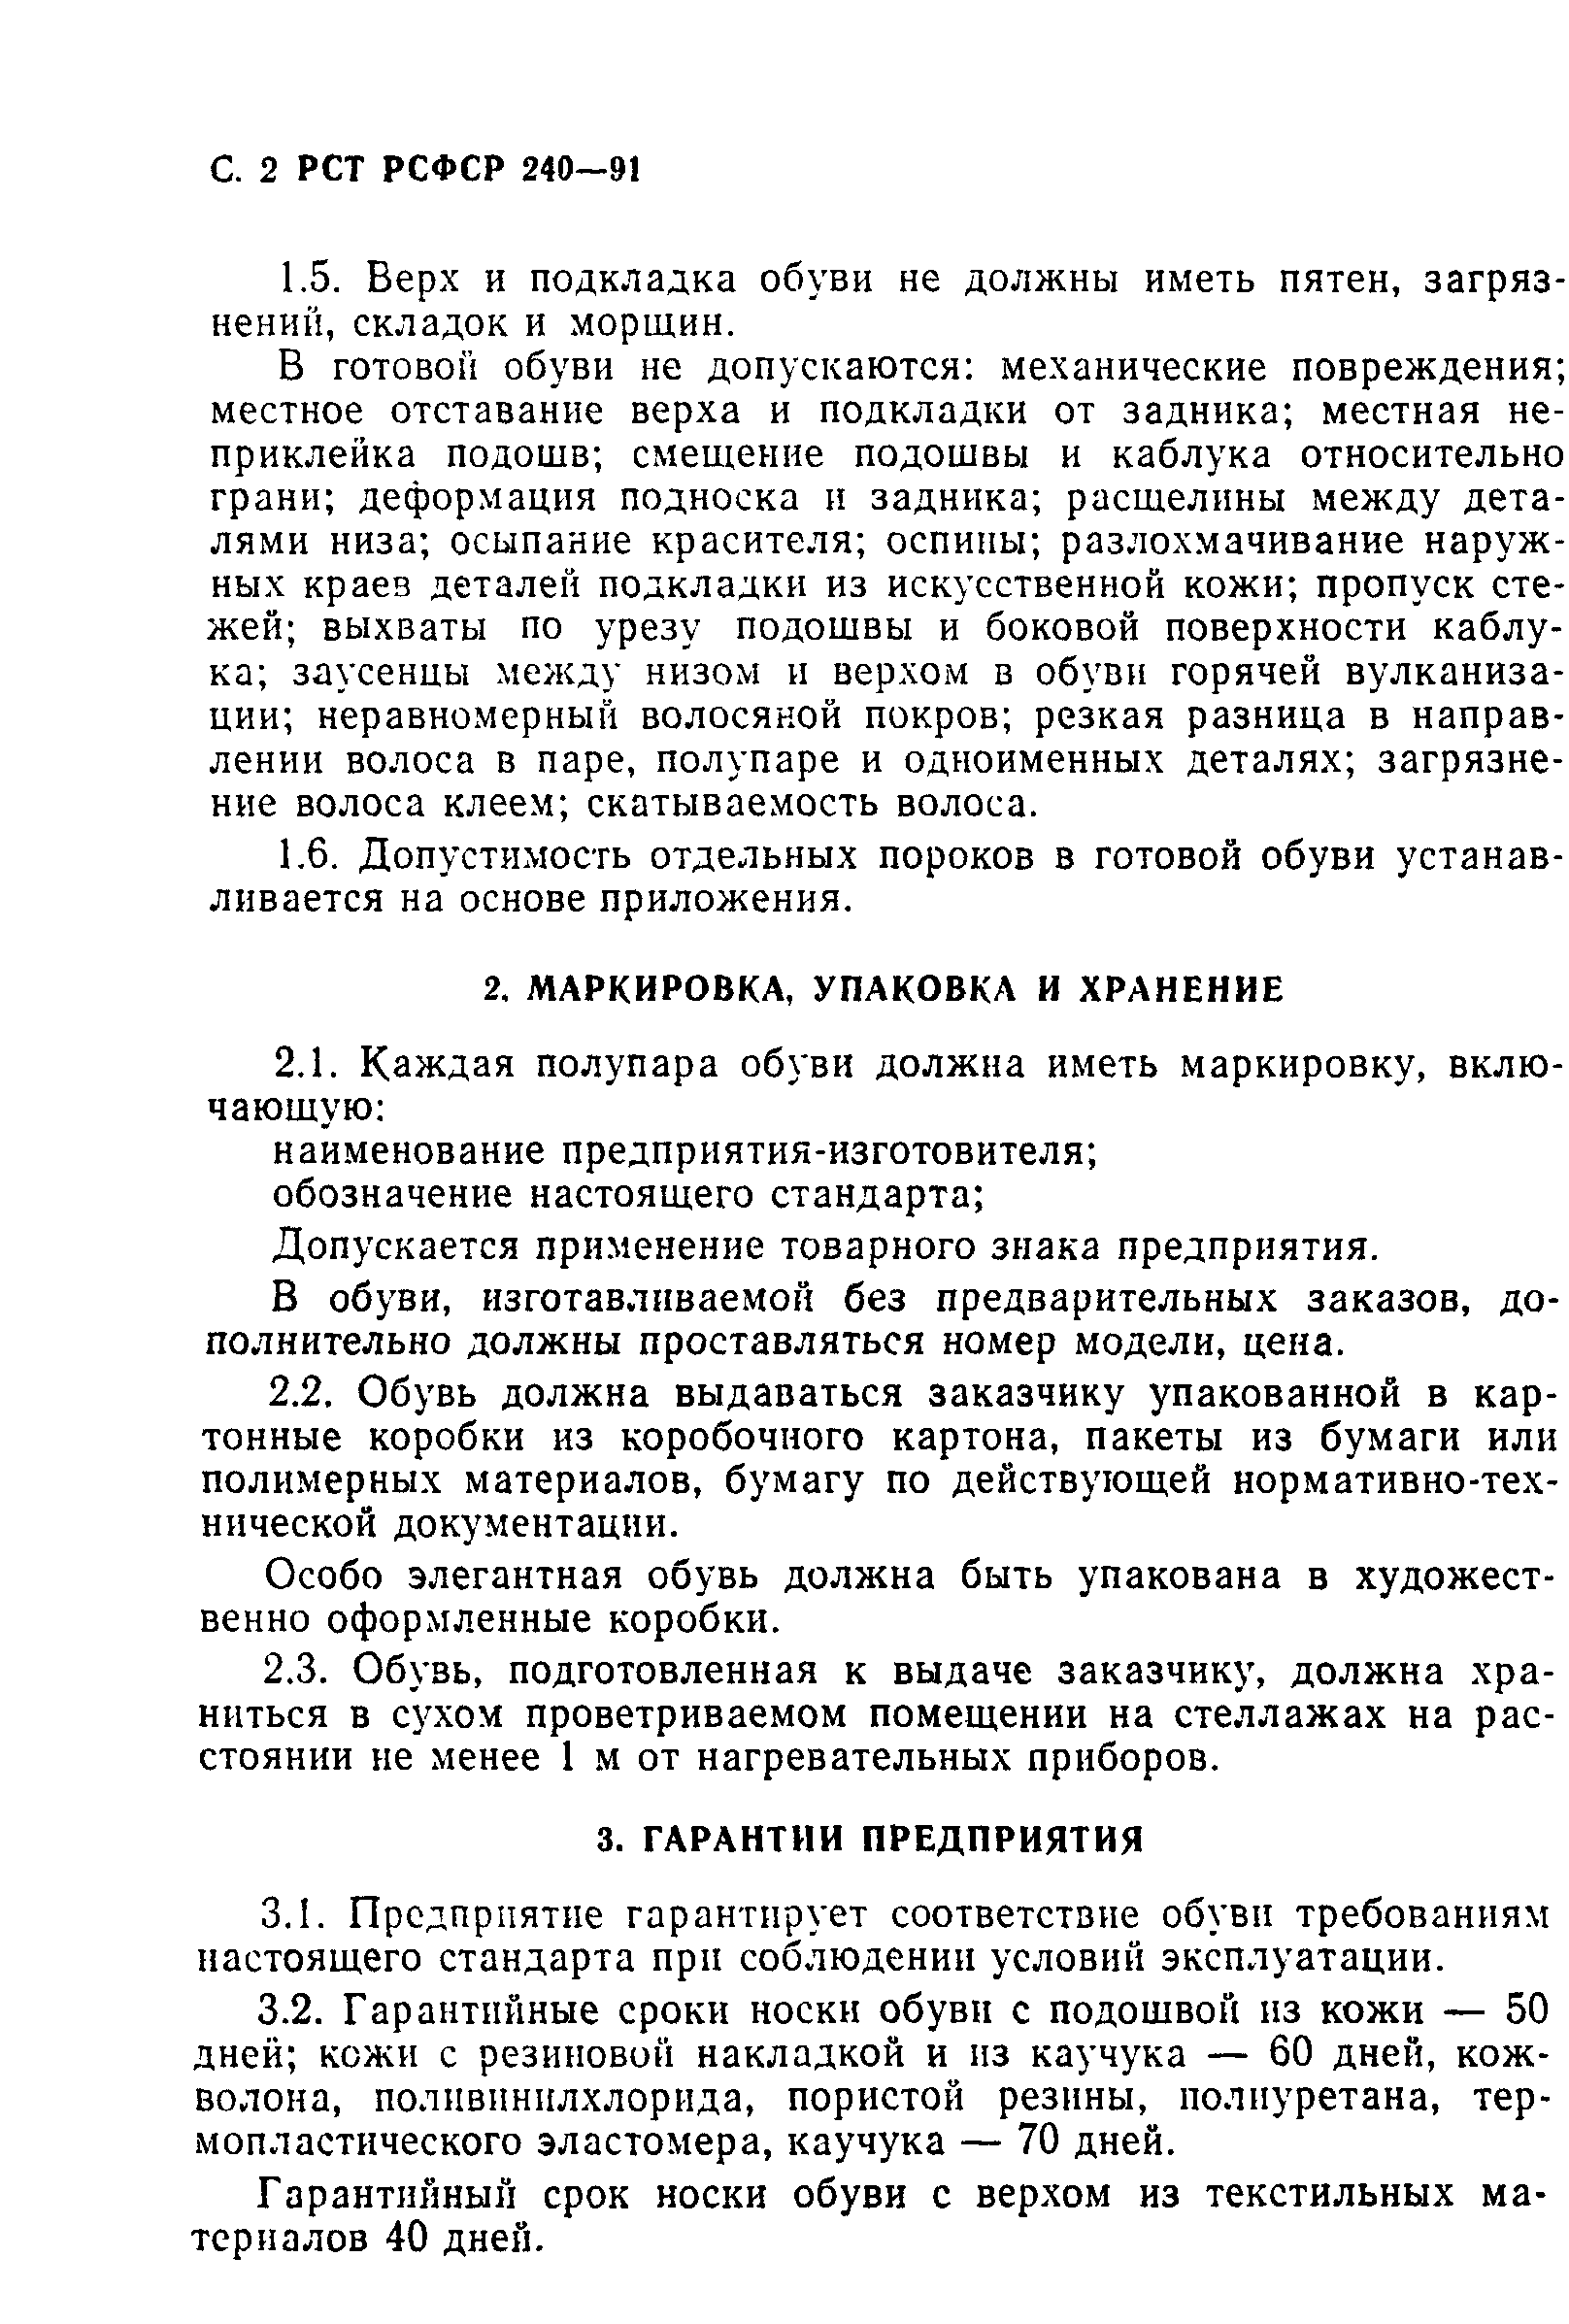 РСТ РСФСР 240-91